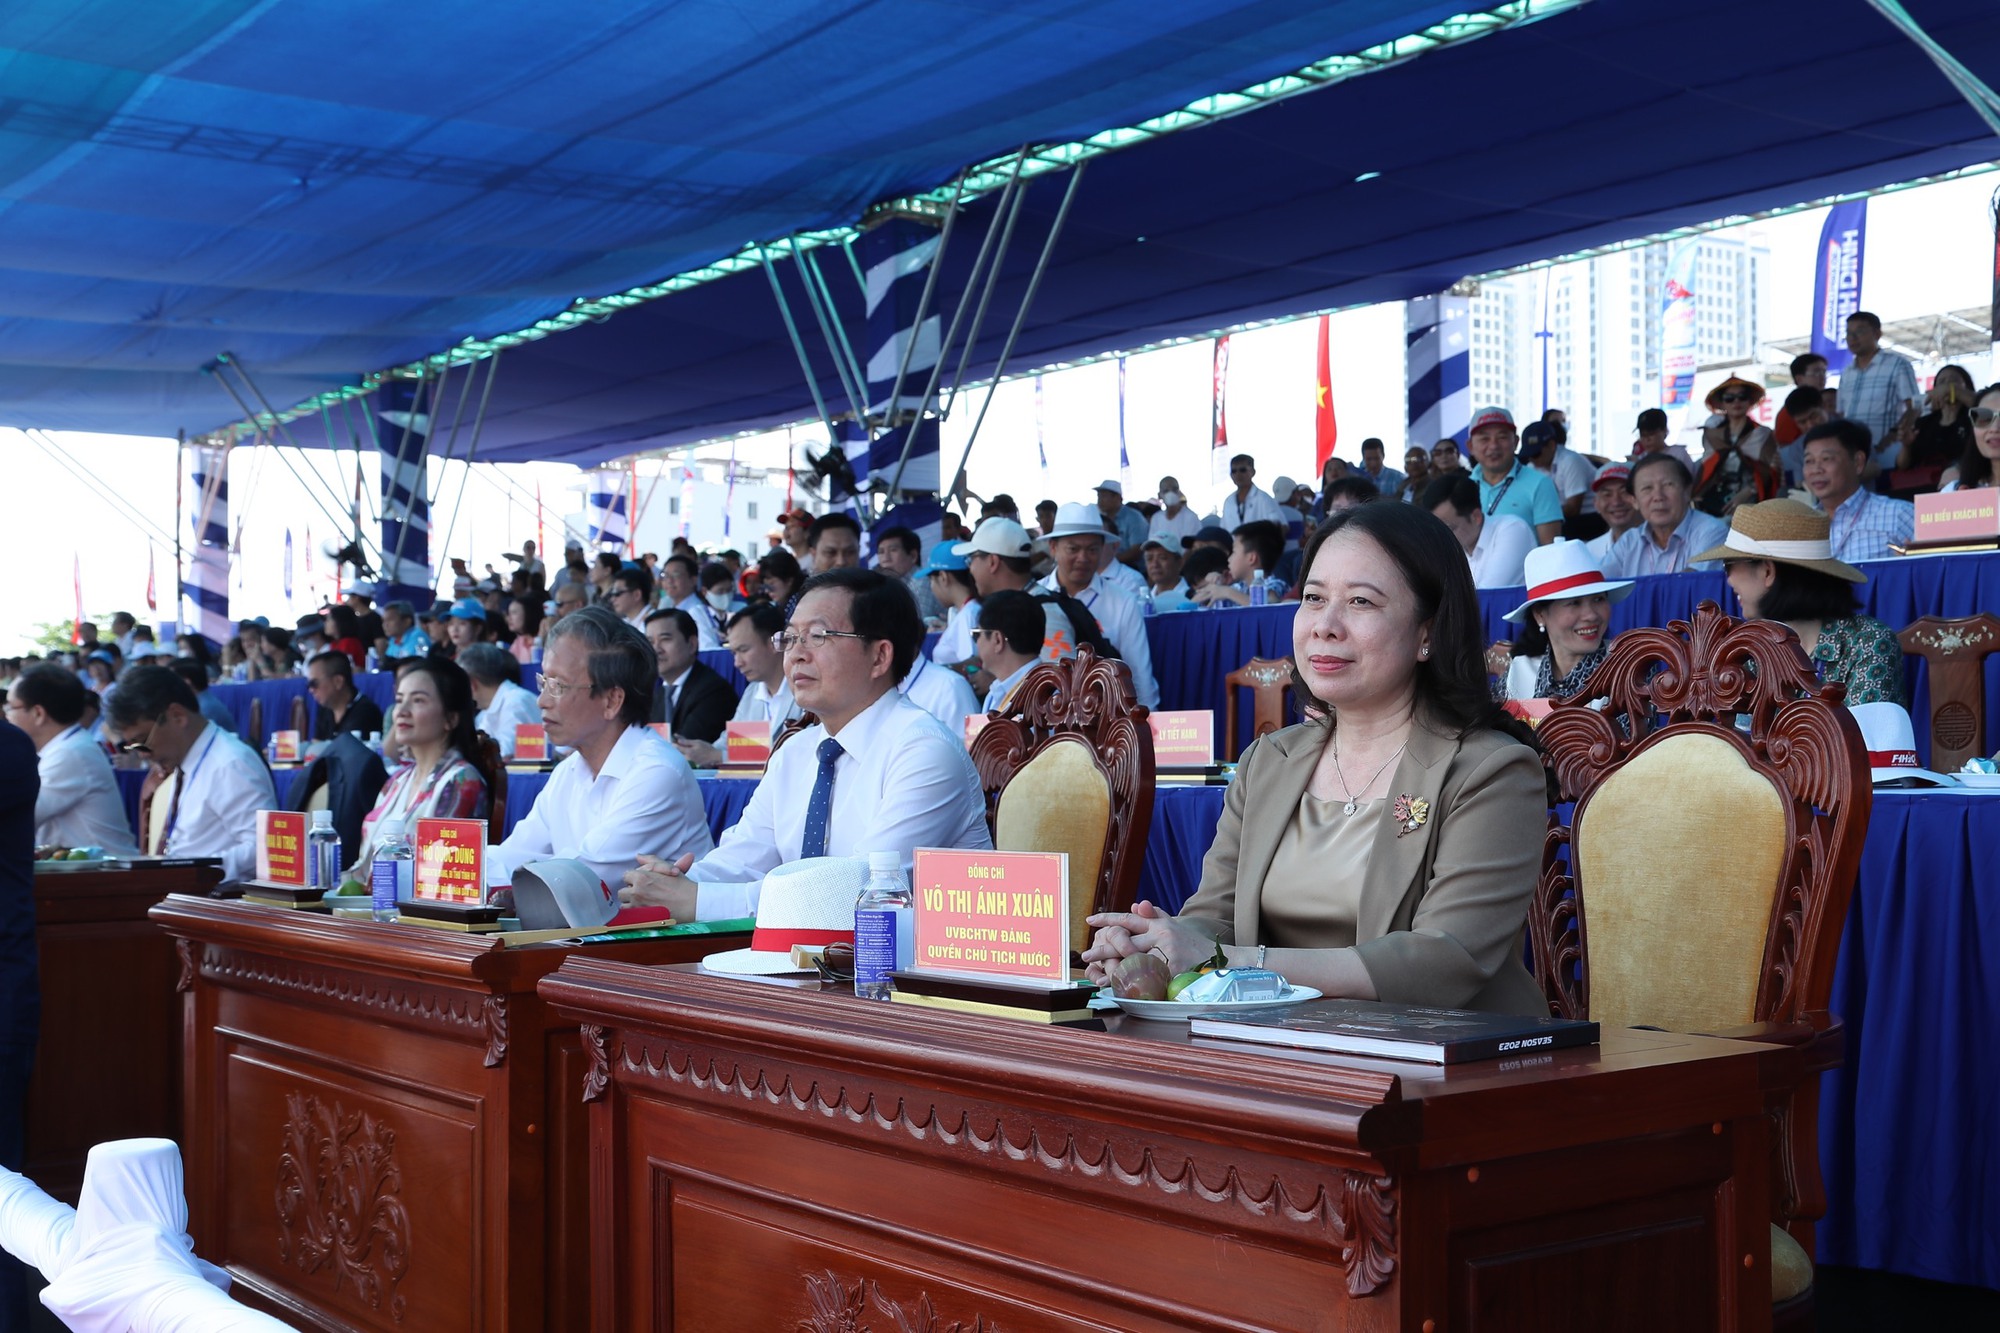 Quyền Chủ tịch nước dự khai mạc giải đua thuyền máy quốc tế lần đầu tổ chức tại Việt Nam- Ảnh 1.